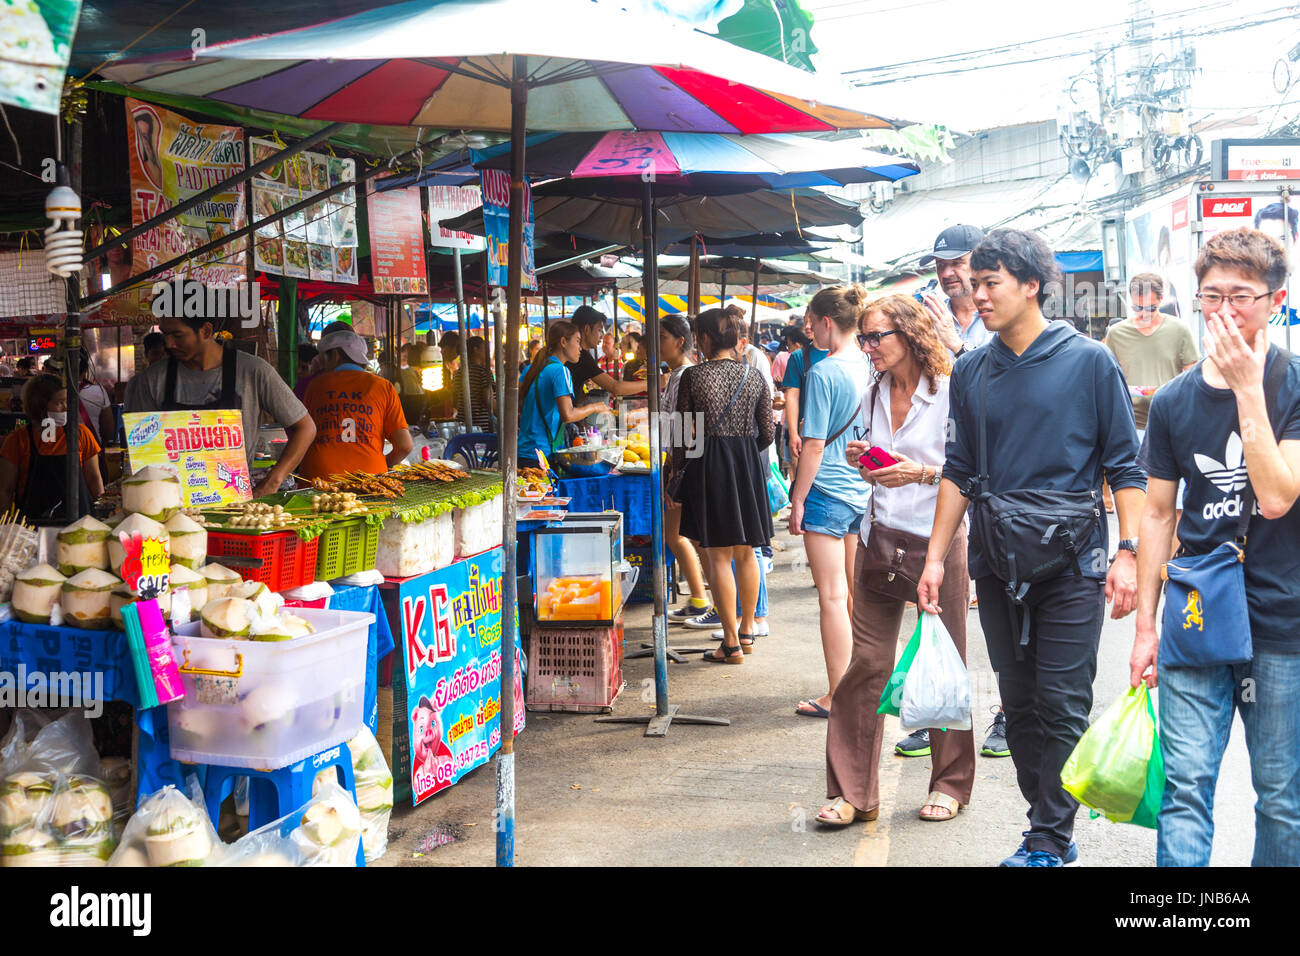 Thai food stalls and crowds walking at Chatuchak Market, Bangkok, Thailand Stock Photo